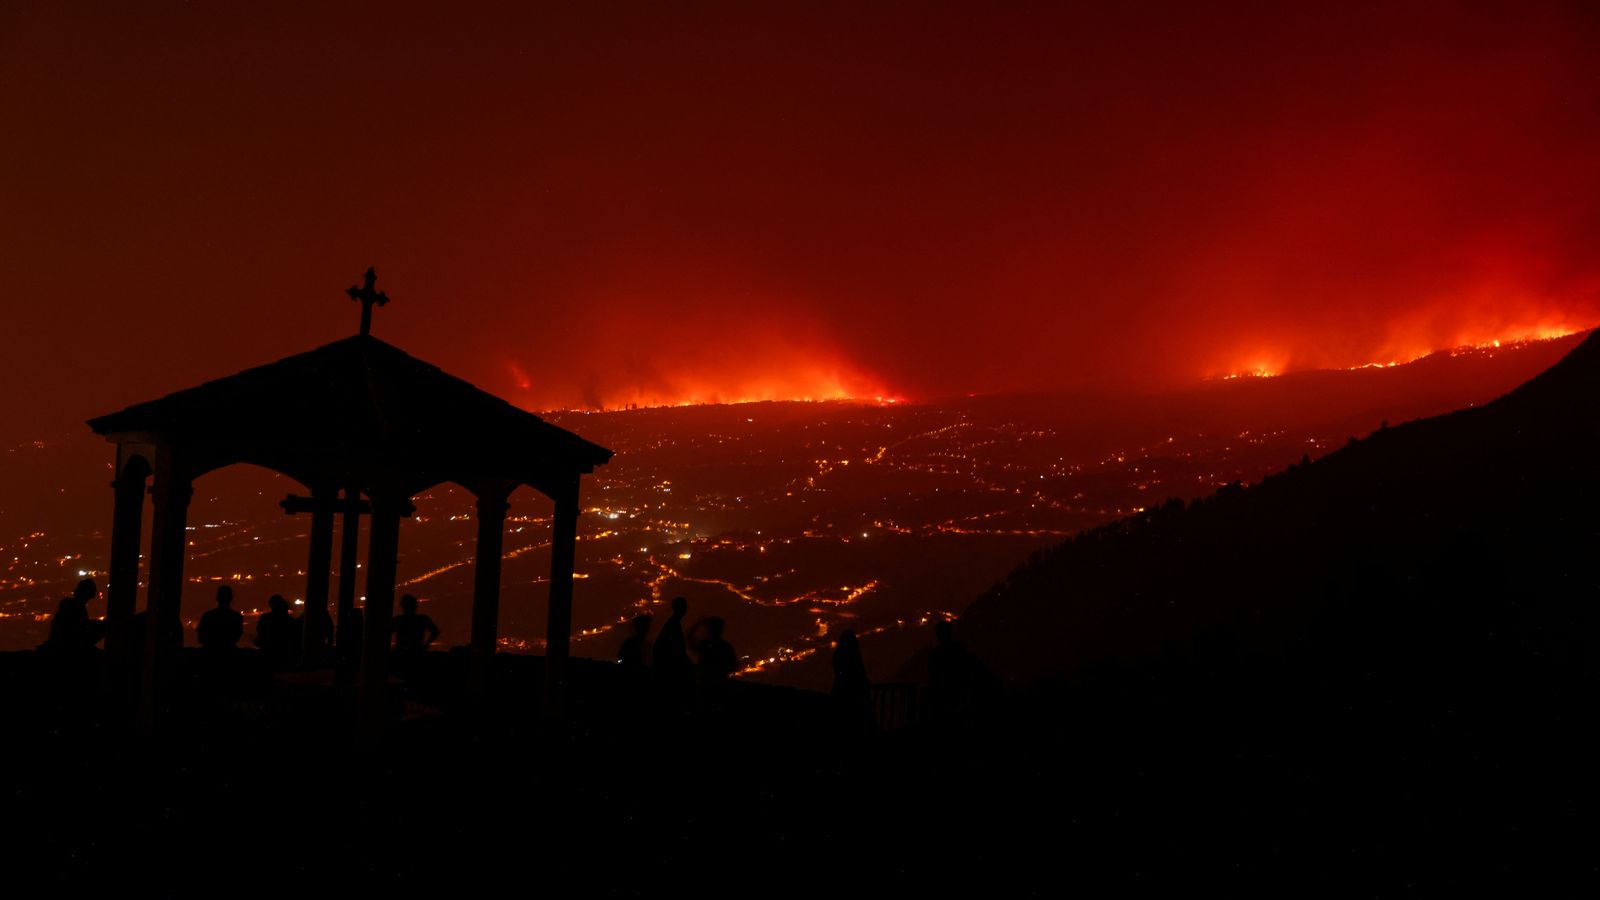 Горският пожар в Тенерифе, който принуди хиляди да напуснат домовете, е бил предизвикан умишлено, твърдят служители